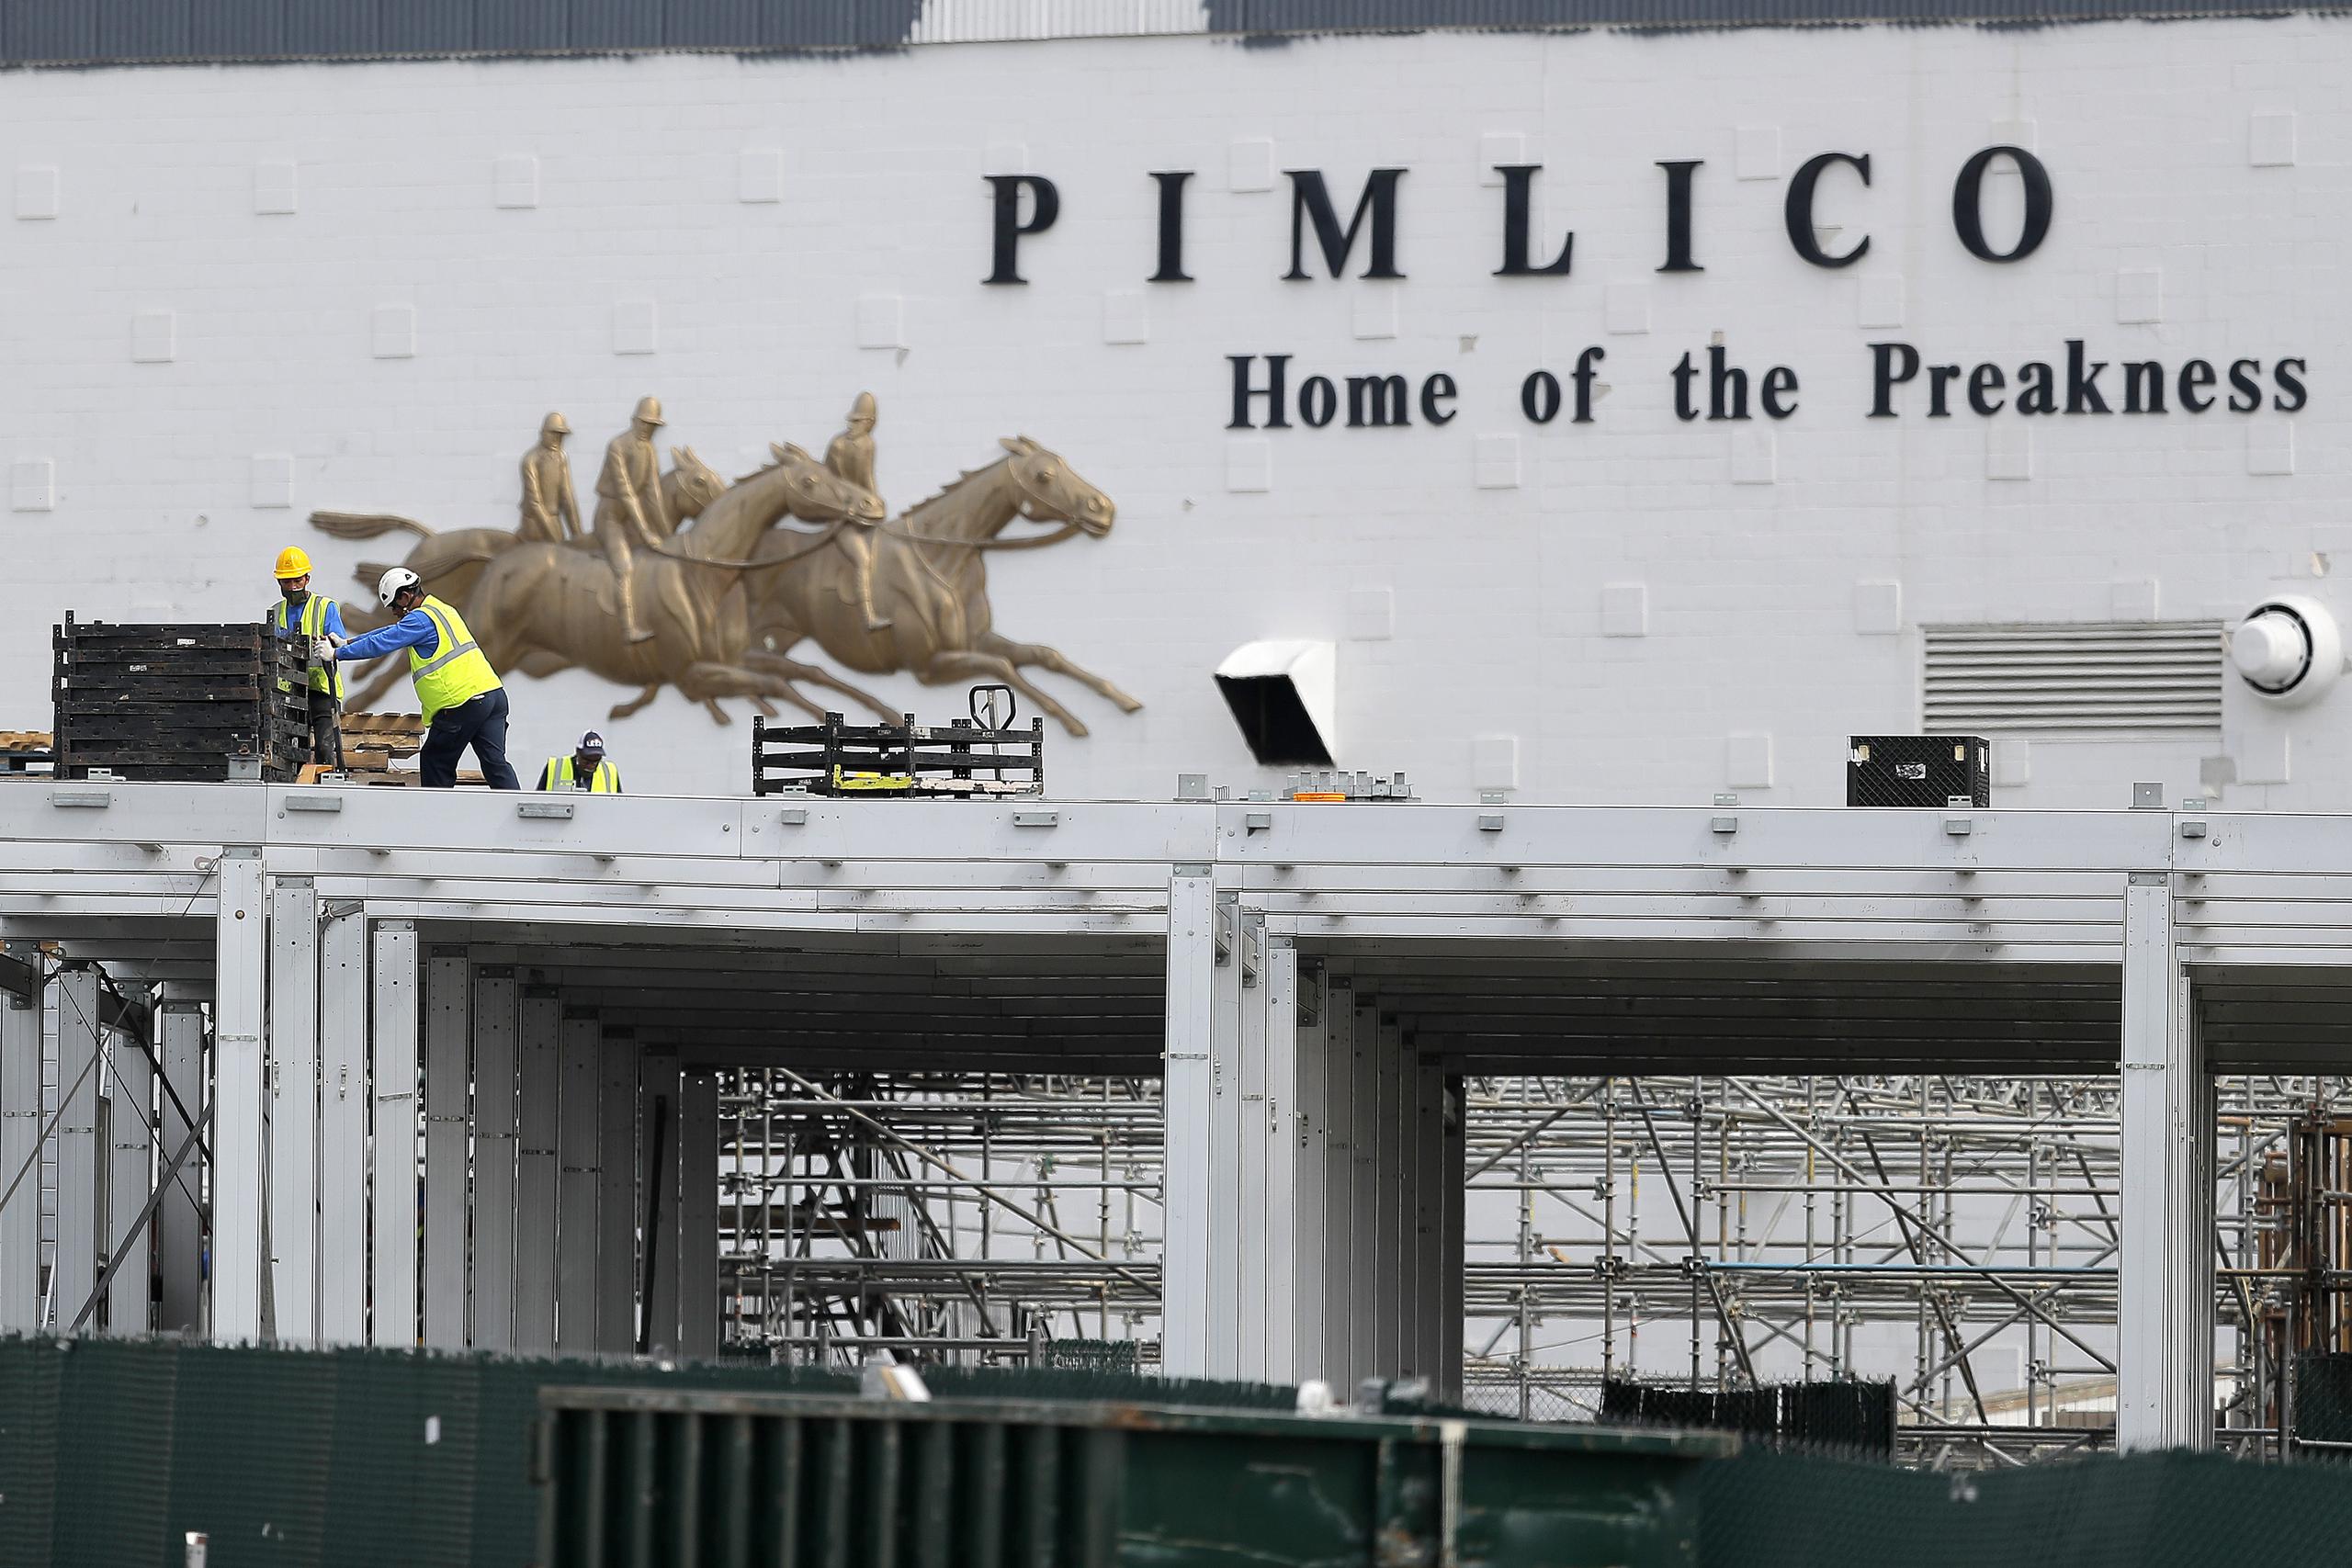 Trabajadores colocan una plataforma en la entrada principal del hipódromo Pimlico Race Course de Baltimore, el 15 de mayo de 2020, un día antes de la fecha original en que se iba a realizar aquí la carrera Preakness, que se pospuso debido a la pandemia de coronavirus.